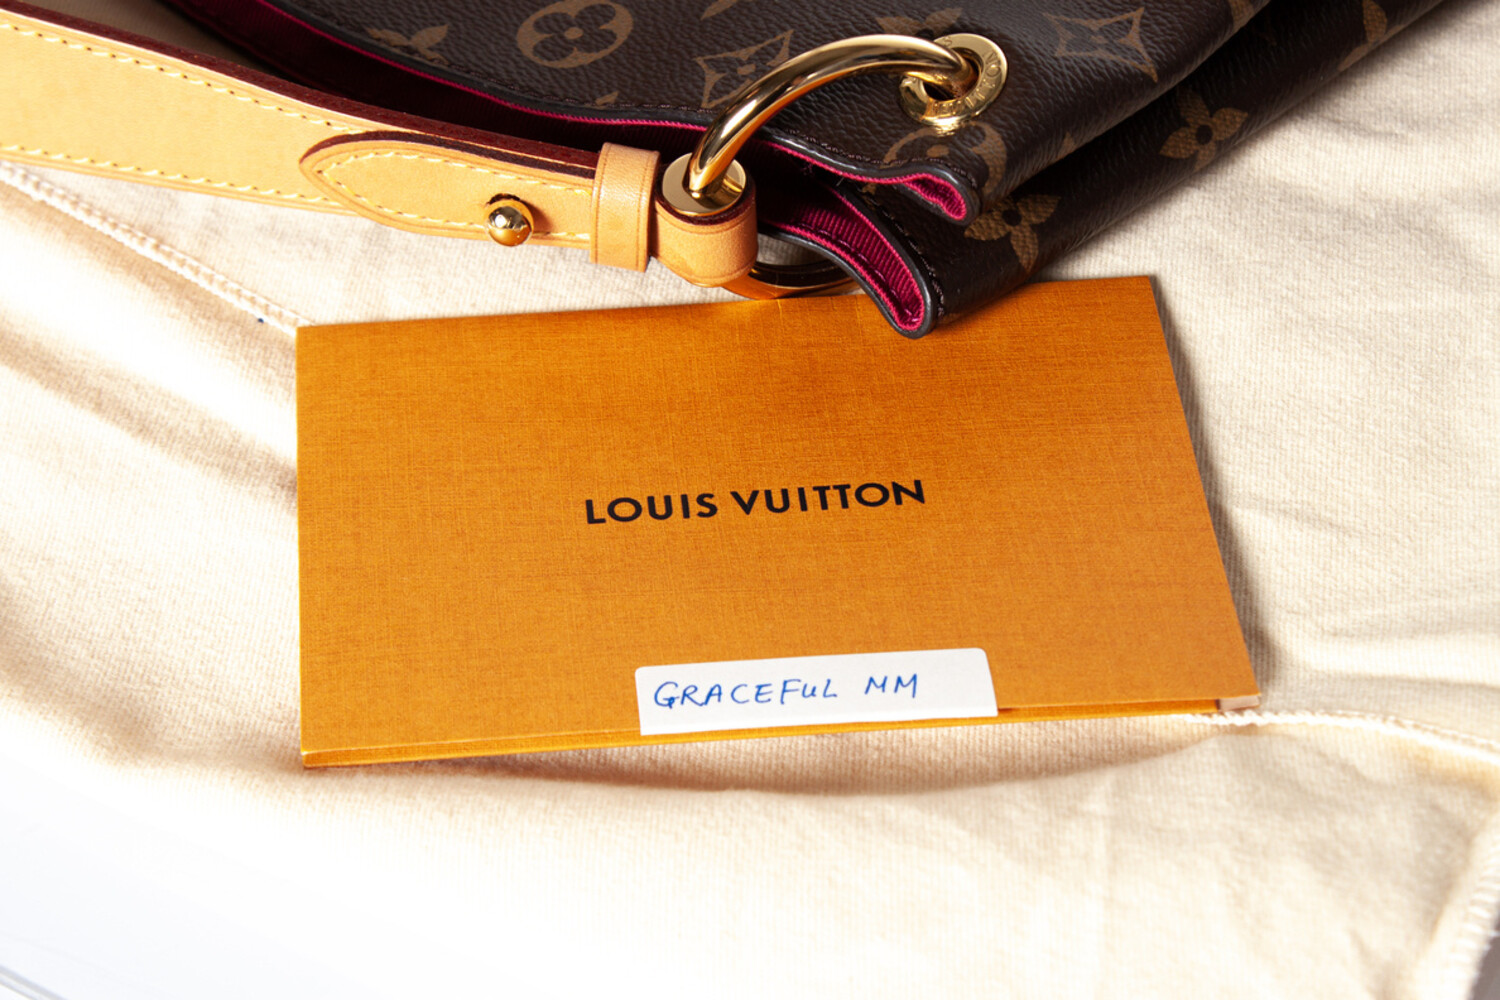 Auth Louis Vuitton Graceful Mm Monogram